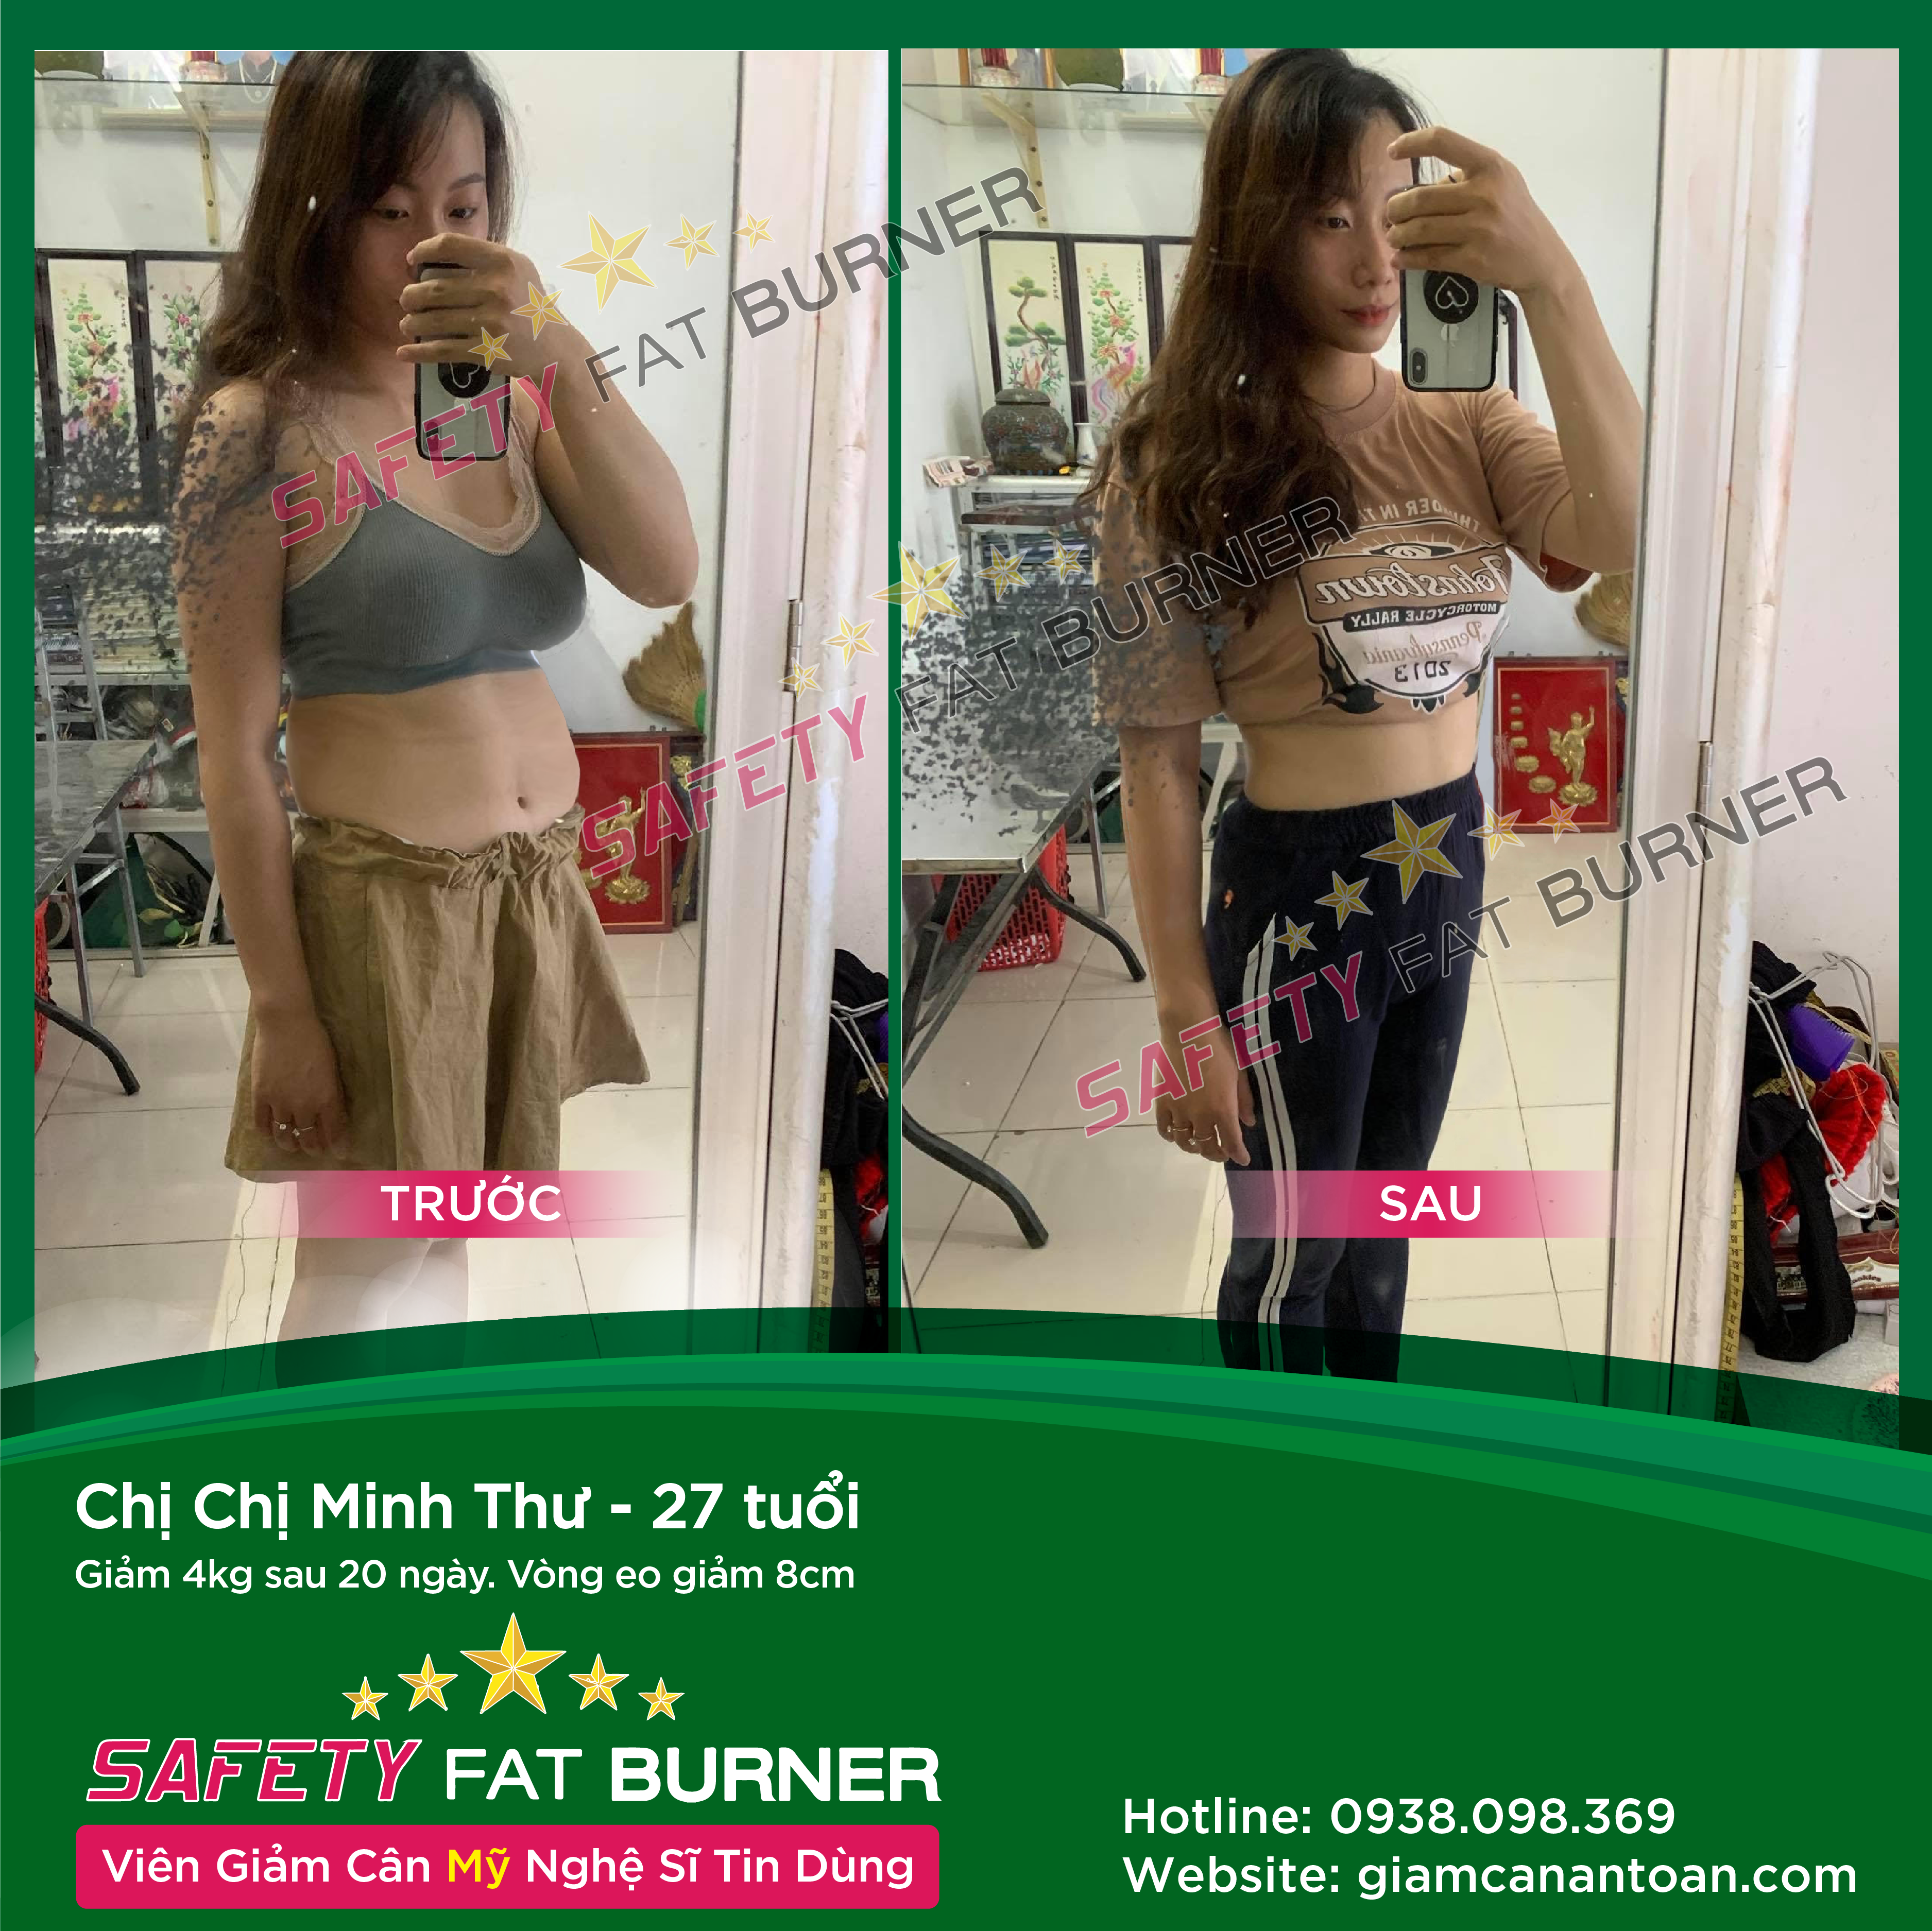 Chị Nhung Nguyễn - 27 tuổi. Giảm 4kg sau 20 ngày. Giảm 8cm vùng bụng.